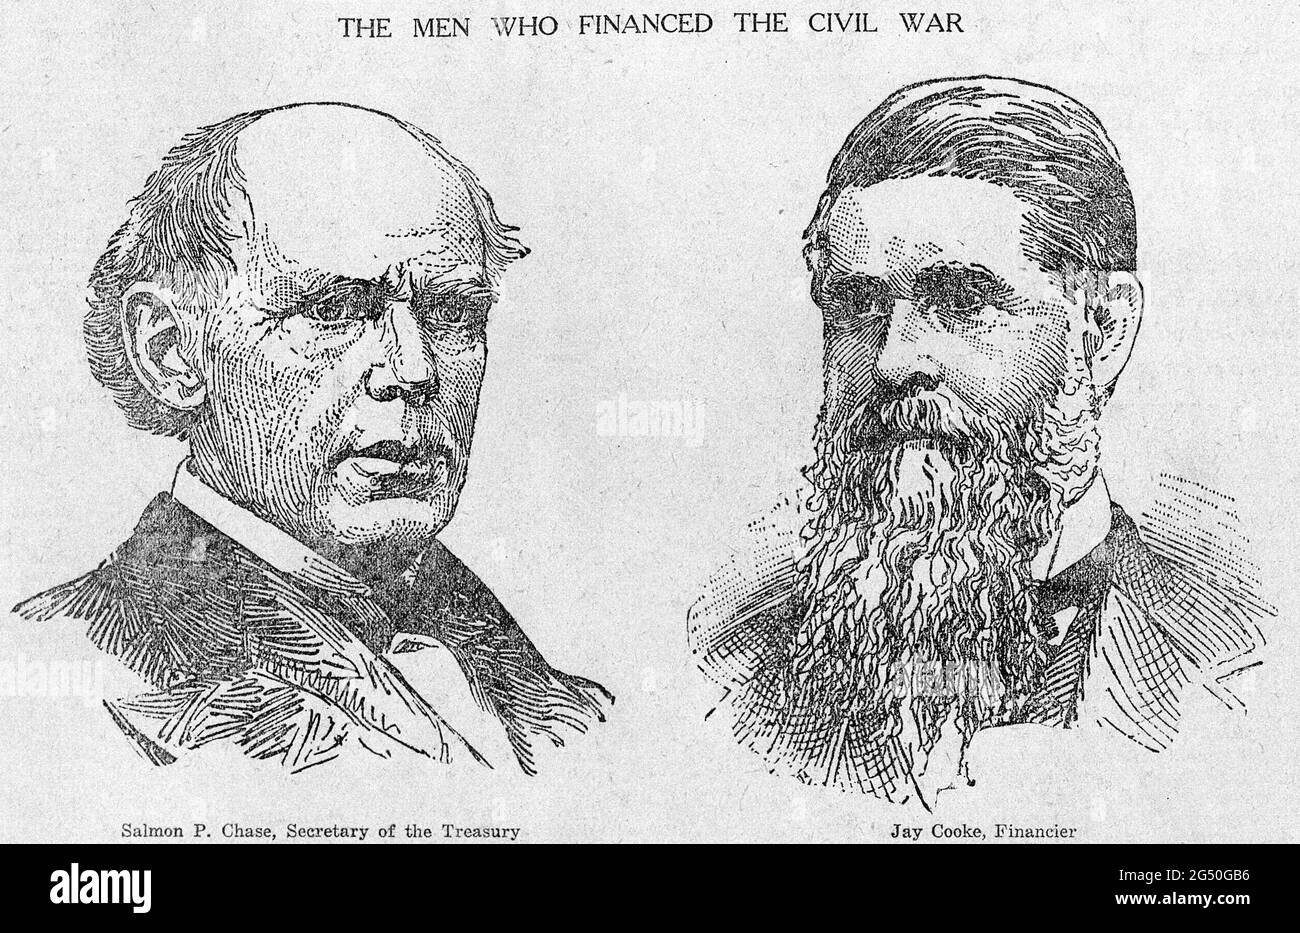 Gravure de deux hommes qui ont financé la guerre civile américaine. ÉTATS-UNIS. 19ième siècle Salmon P. Chase, secrétaire au Trésor (à gauche) et Jay Cooke, financière Banque D'Images